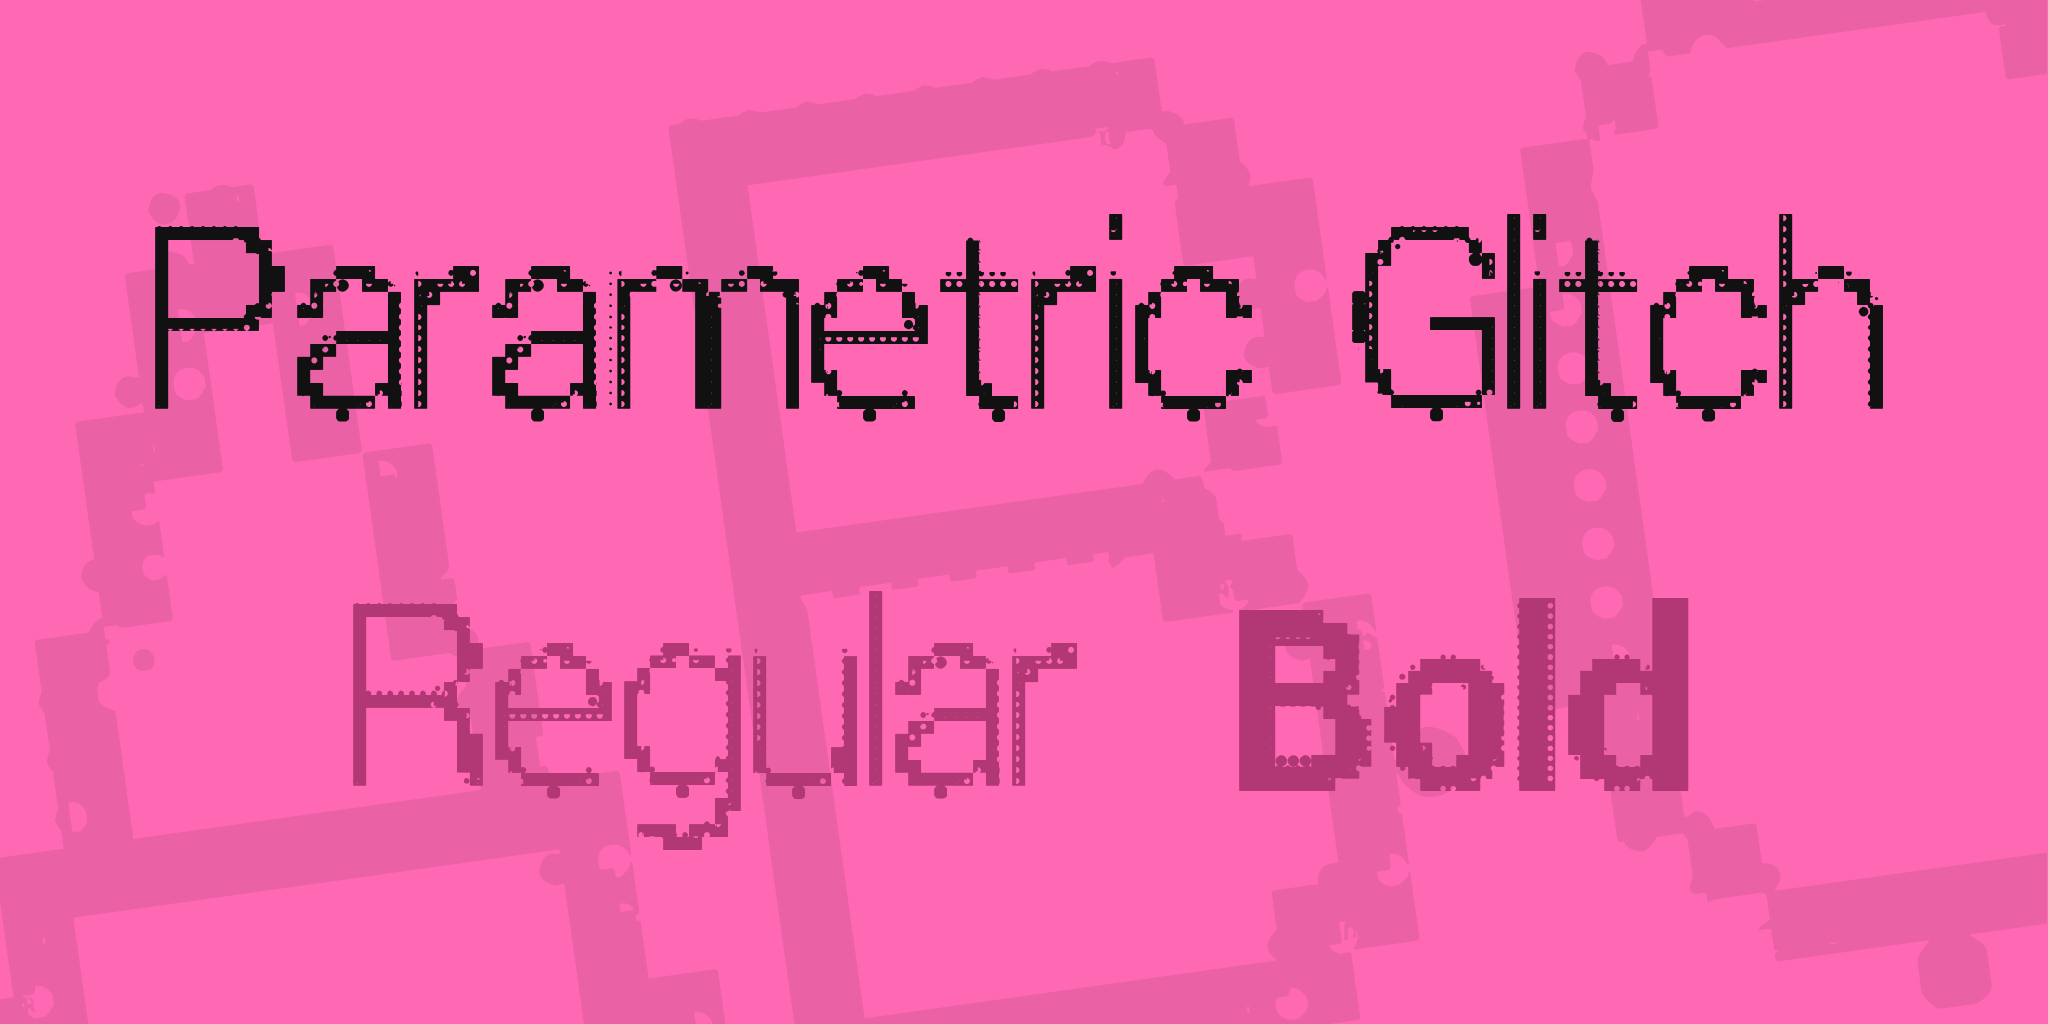 Parametric Glitch